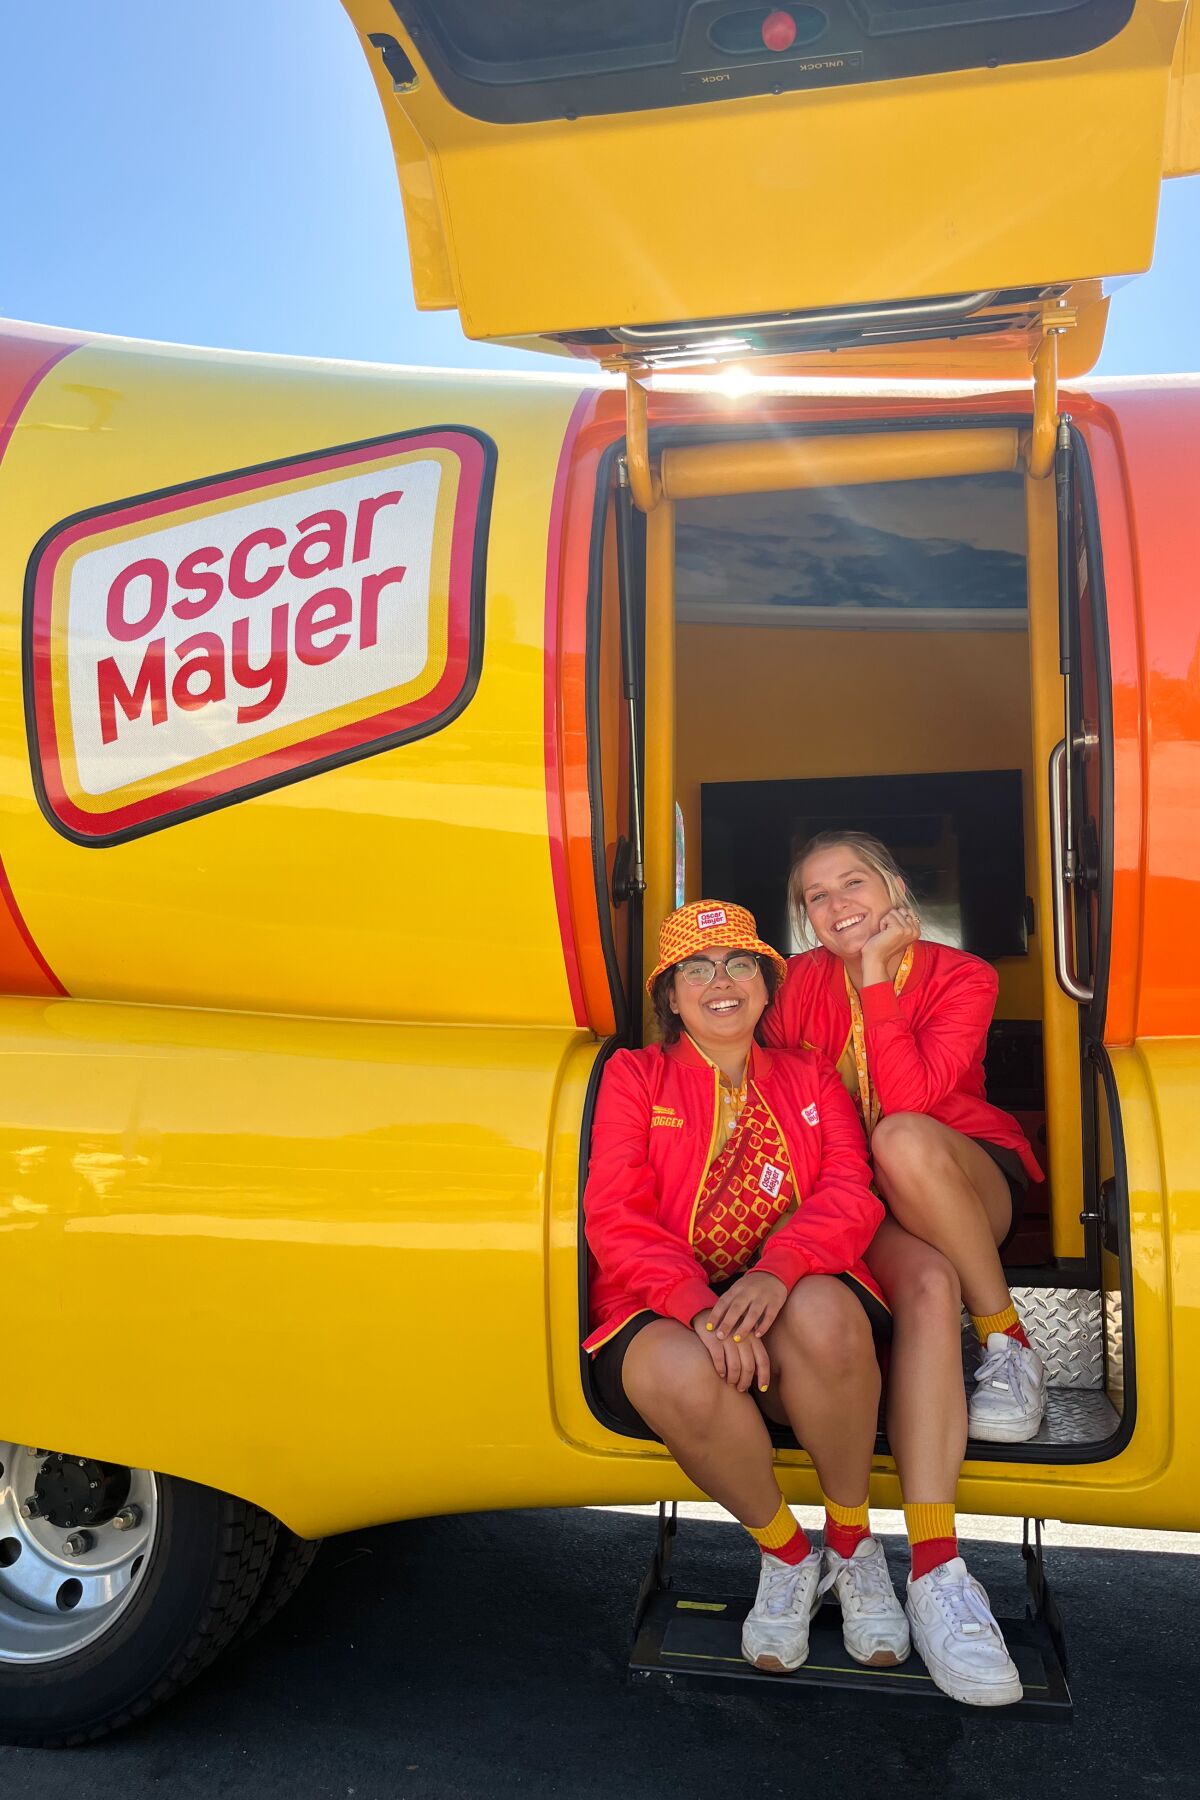 İki kadın, Oscar Mayer Wienermobile'ın açık tarafındaki basamaklarda oturuyor.